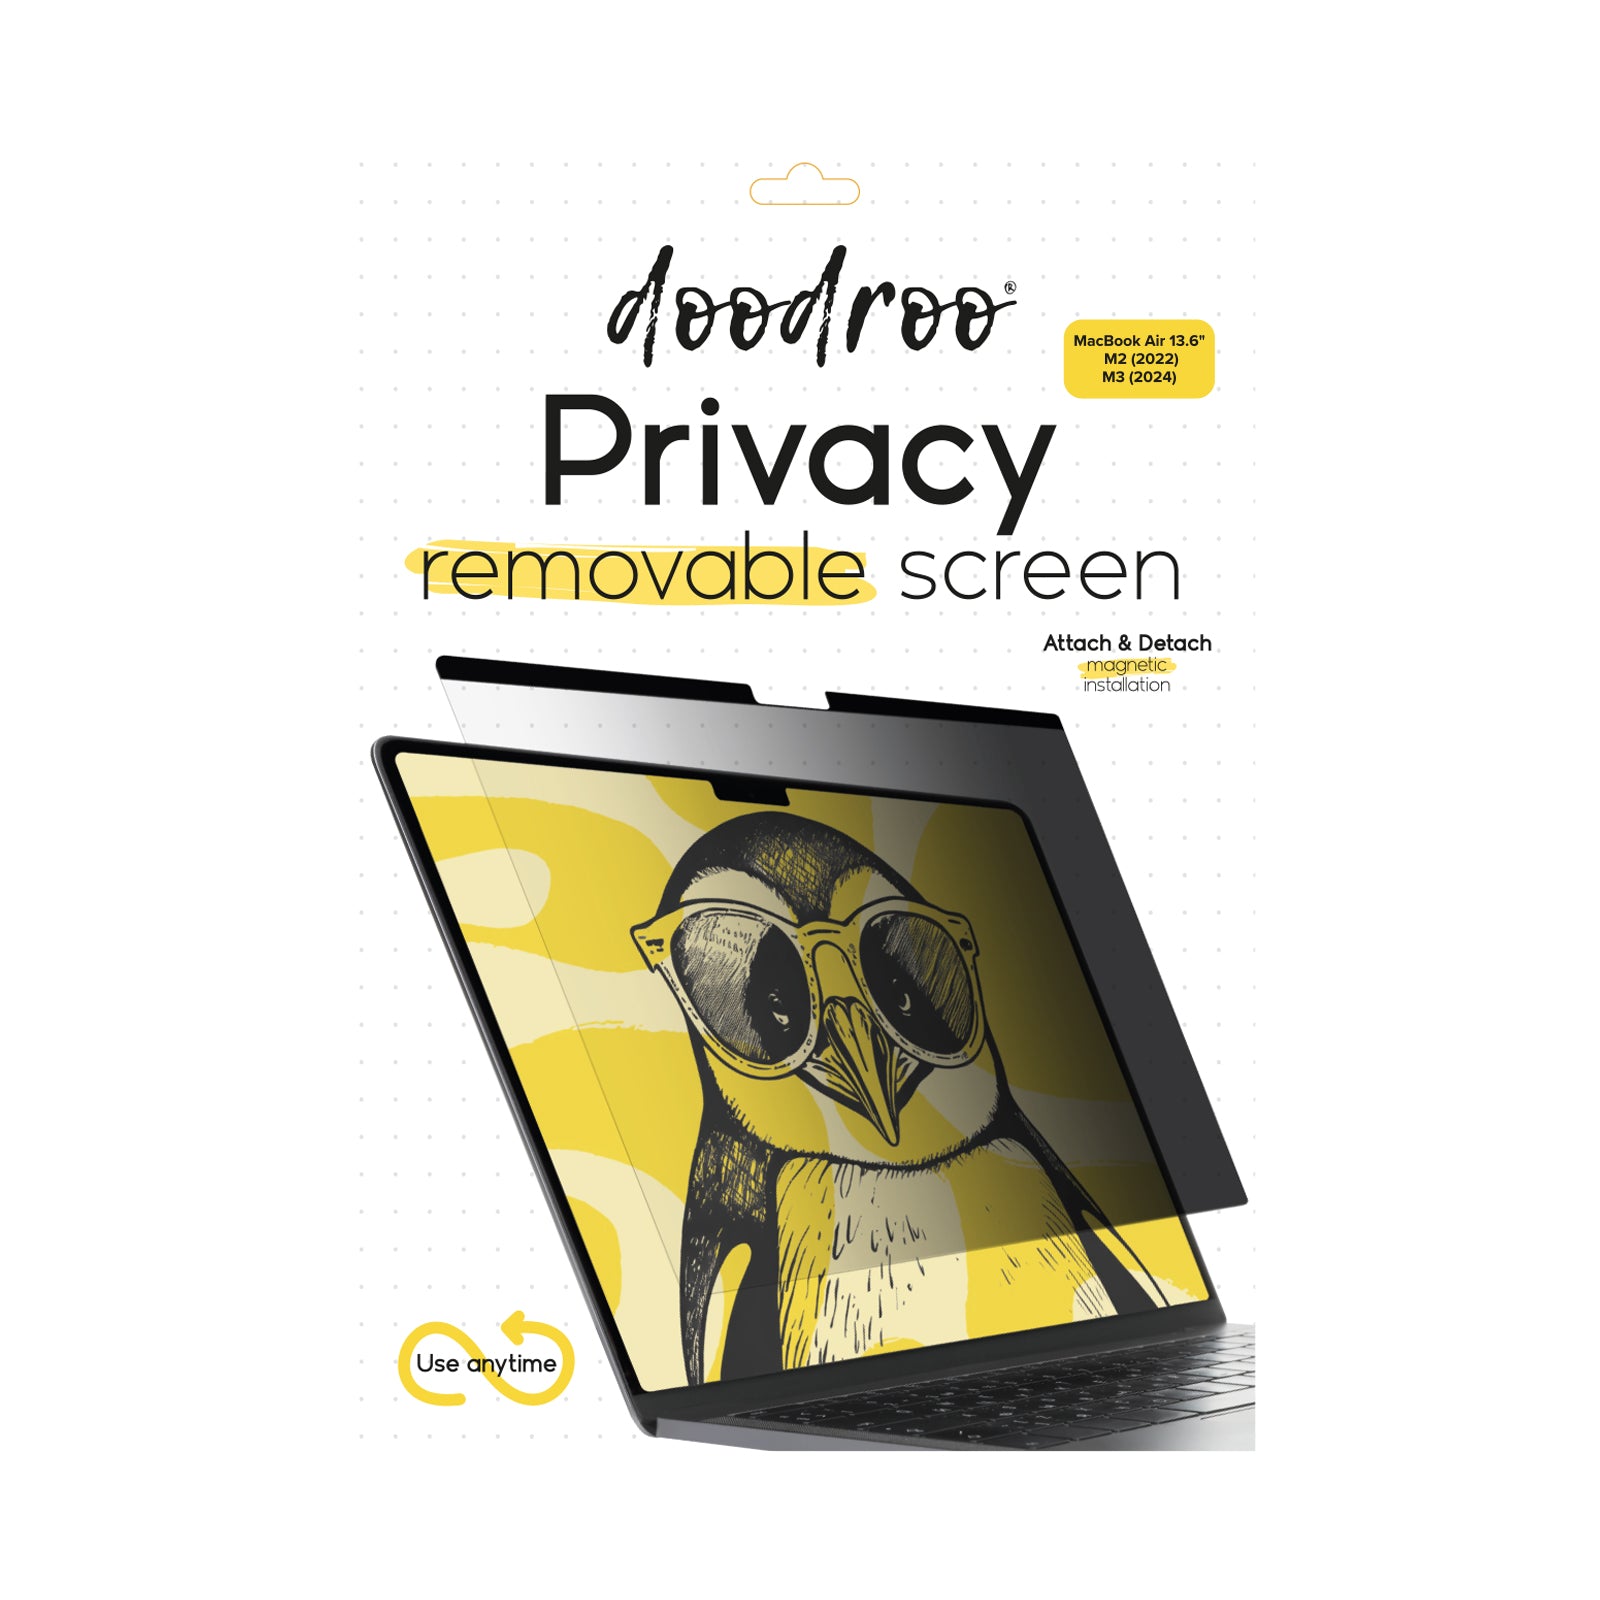 Filtre protecteur de confidentialité, amovible, pour MacBook Air 13.6" M2 (2022) / Macbook Air 13.6" M3 (2024)